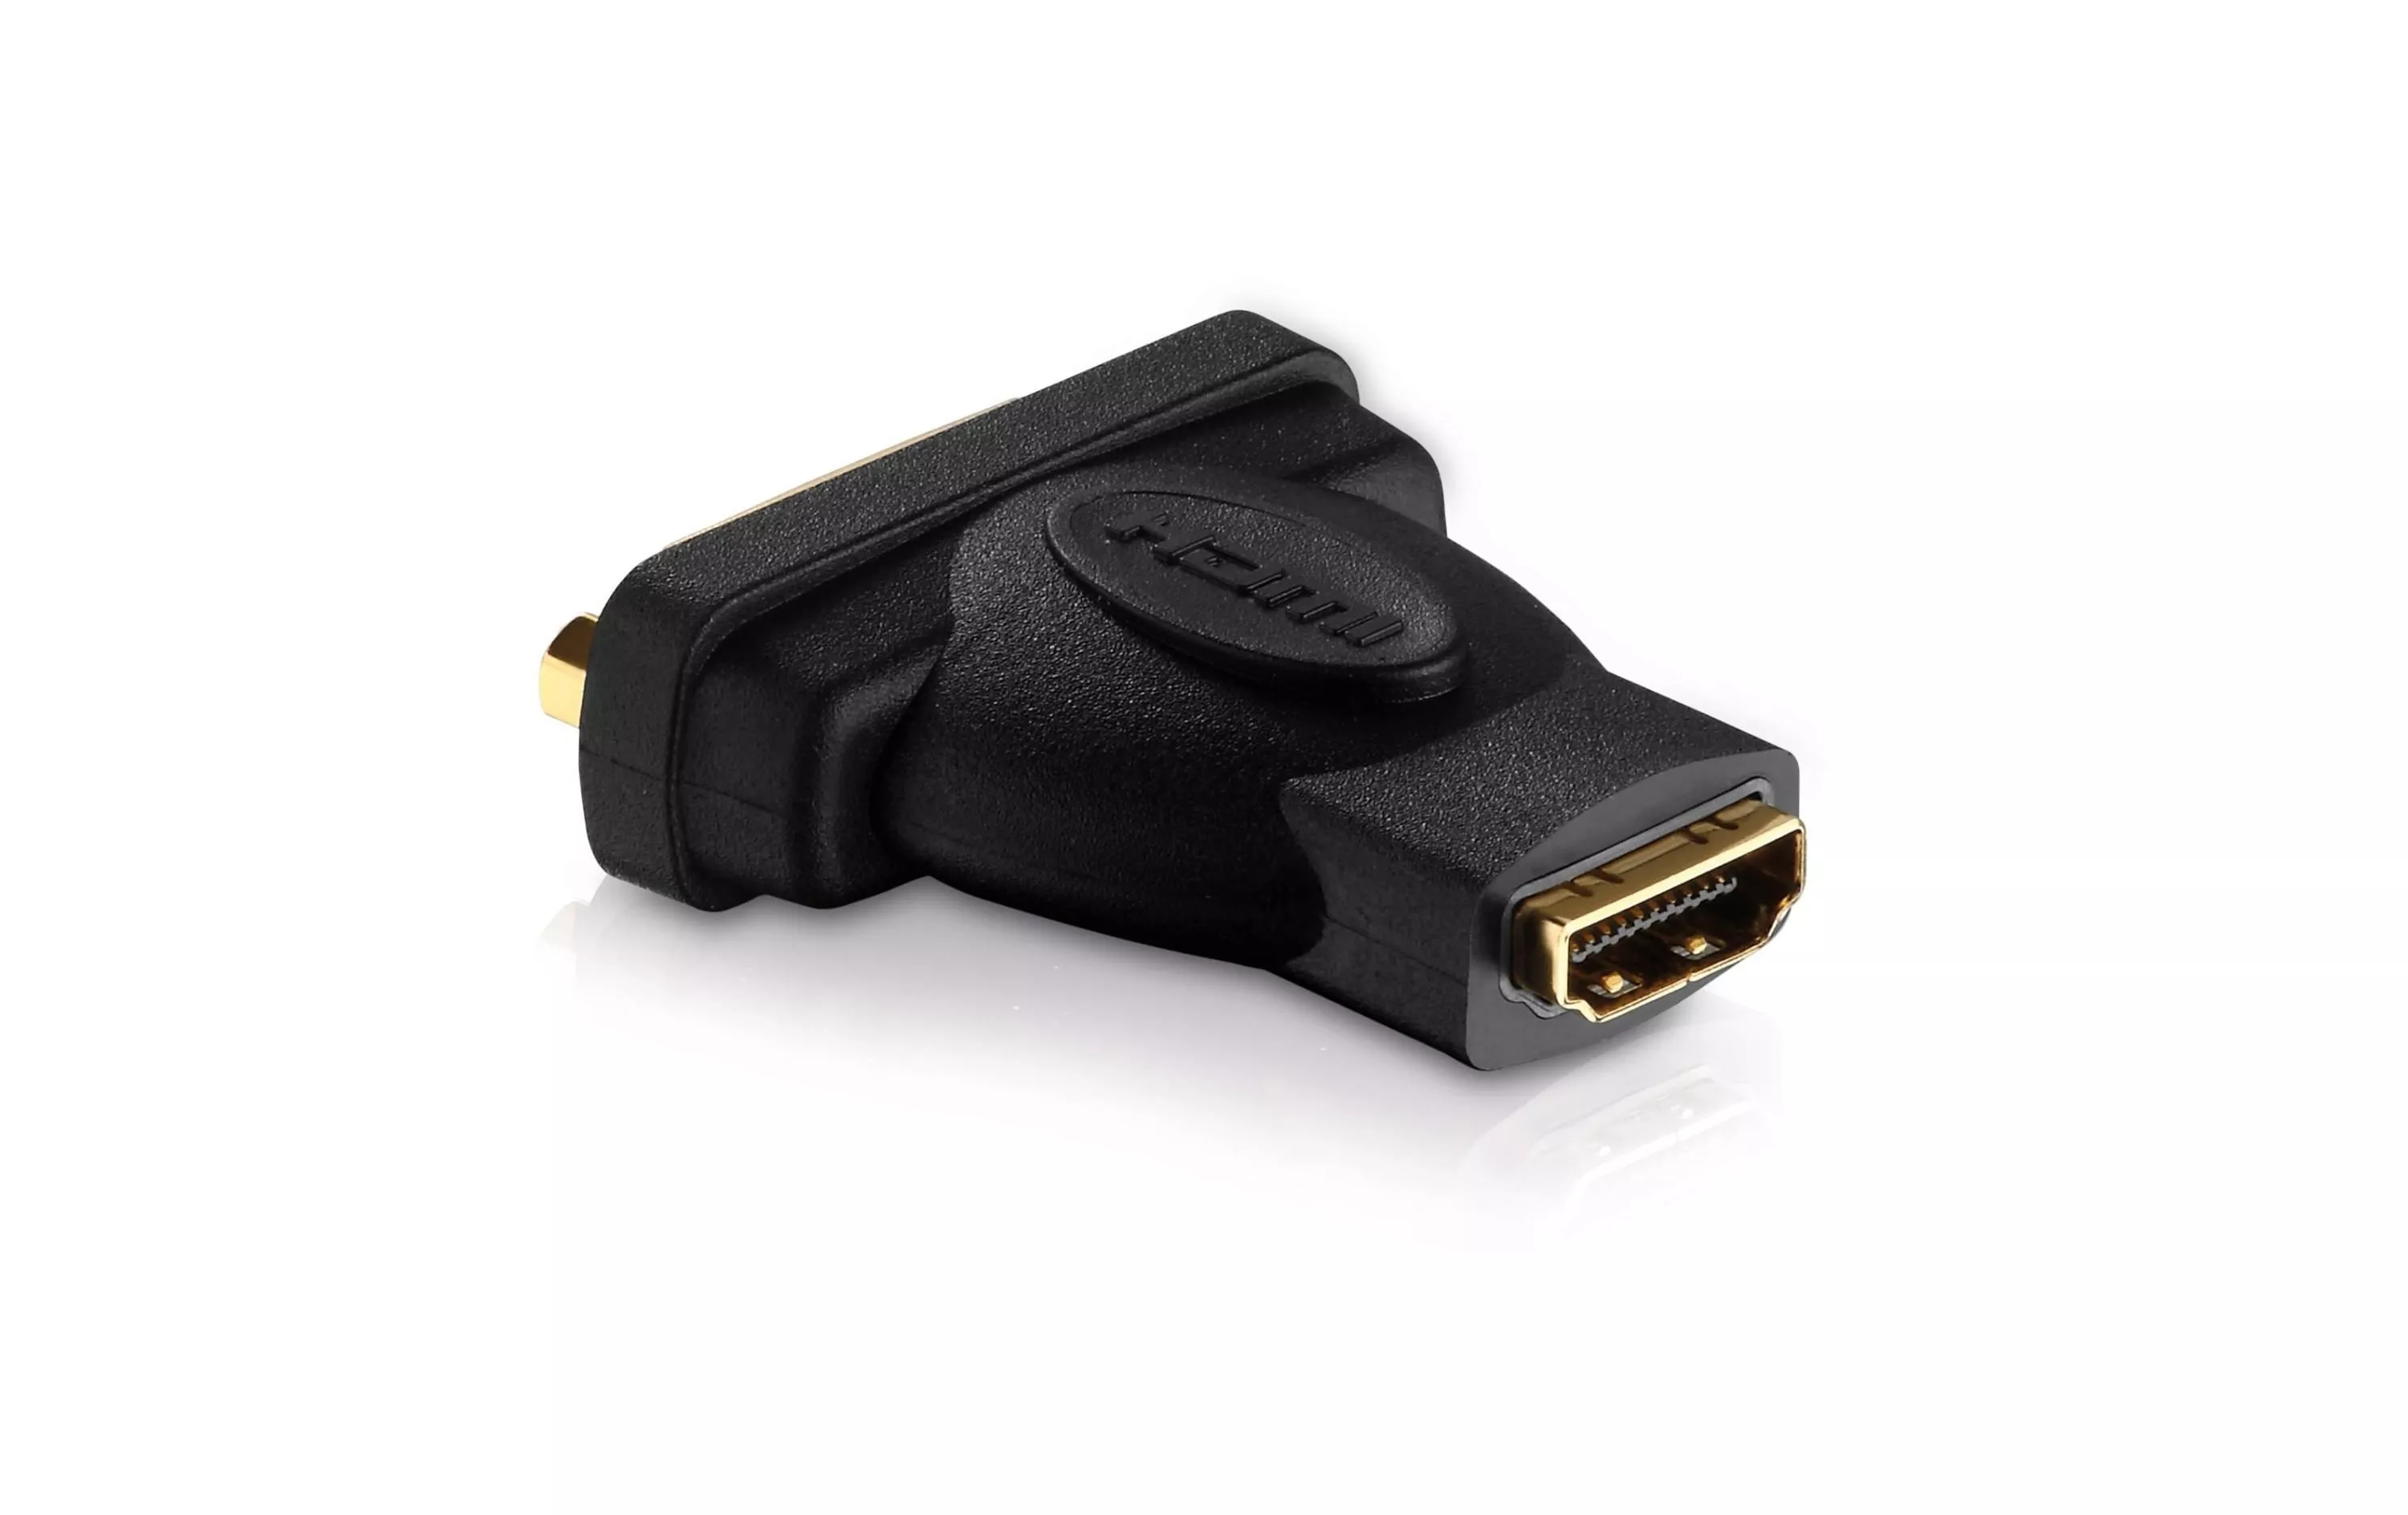 Adapter HDMI - DVI-D